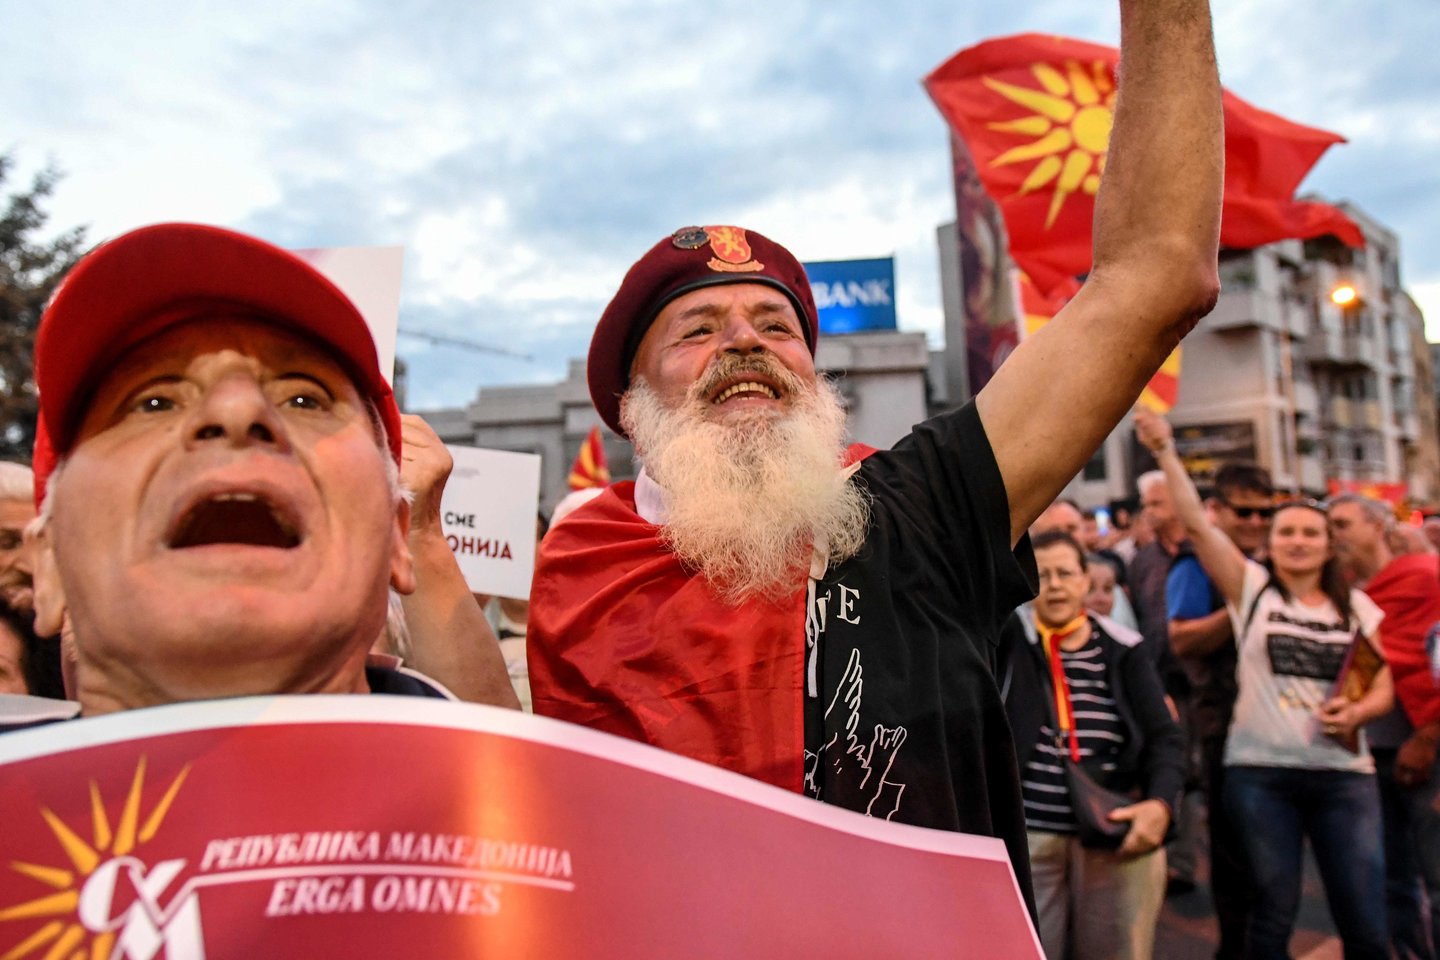  Jau šį sekmadienį 1,8 mln. balso teisę turinčių makedonų spręs ar užkasti karo kirvį su Graikija ir pakeisti šalies pavadinimą<br> AFP/Scanpix nuotr.